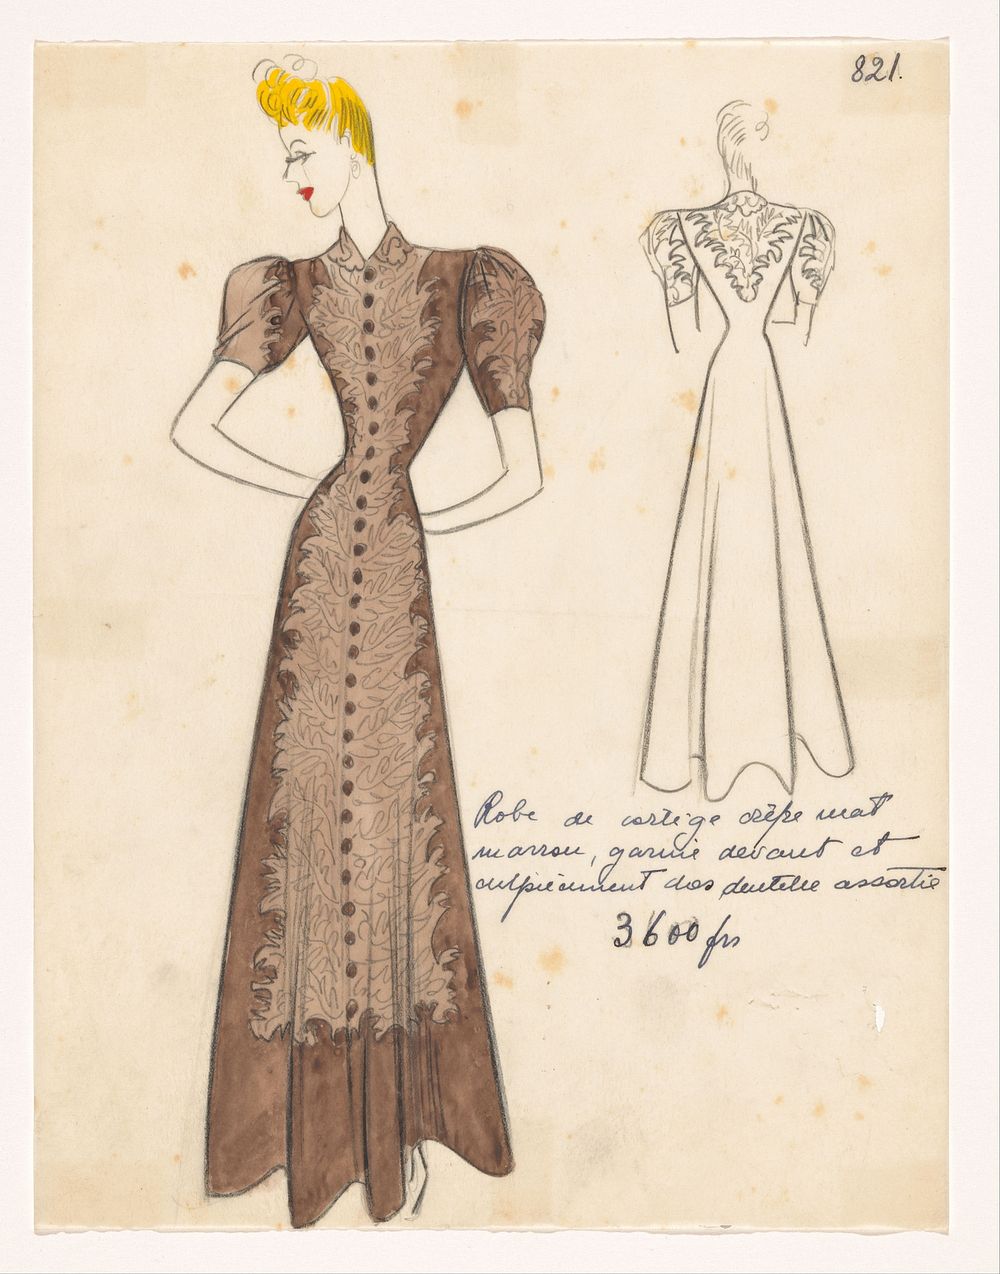 Robe de cortège crêpe mat marron, garnie devant et empiècement dos dentelle assortie. (1938 - 1939) by Jean Dessès